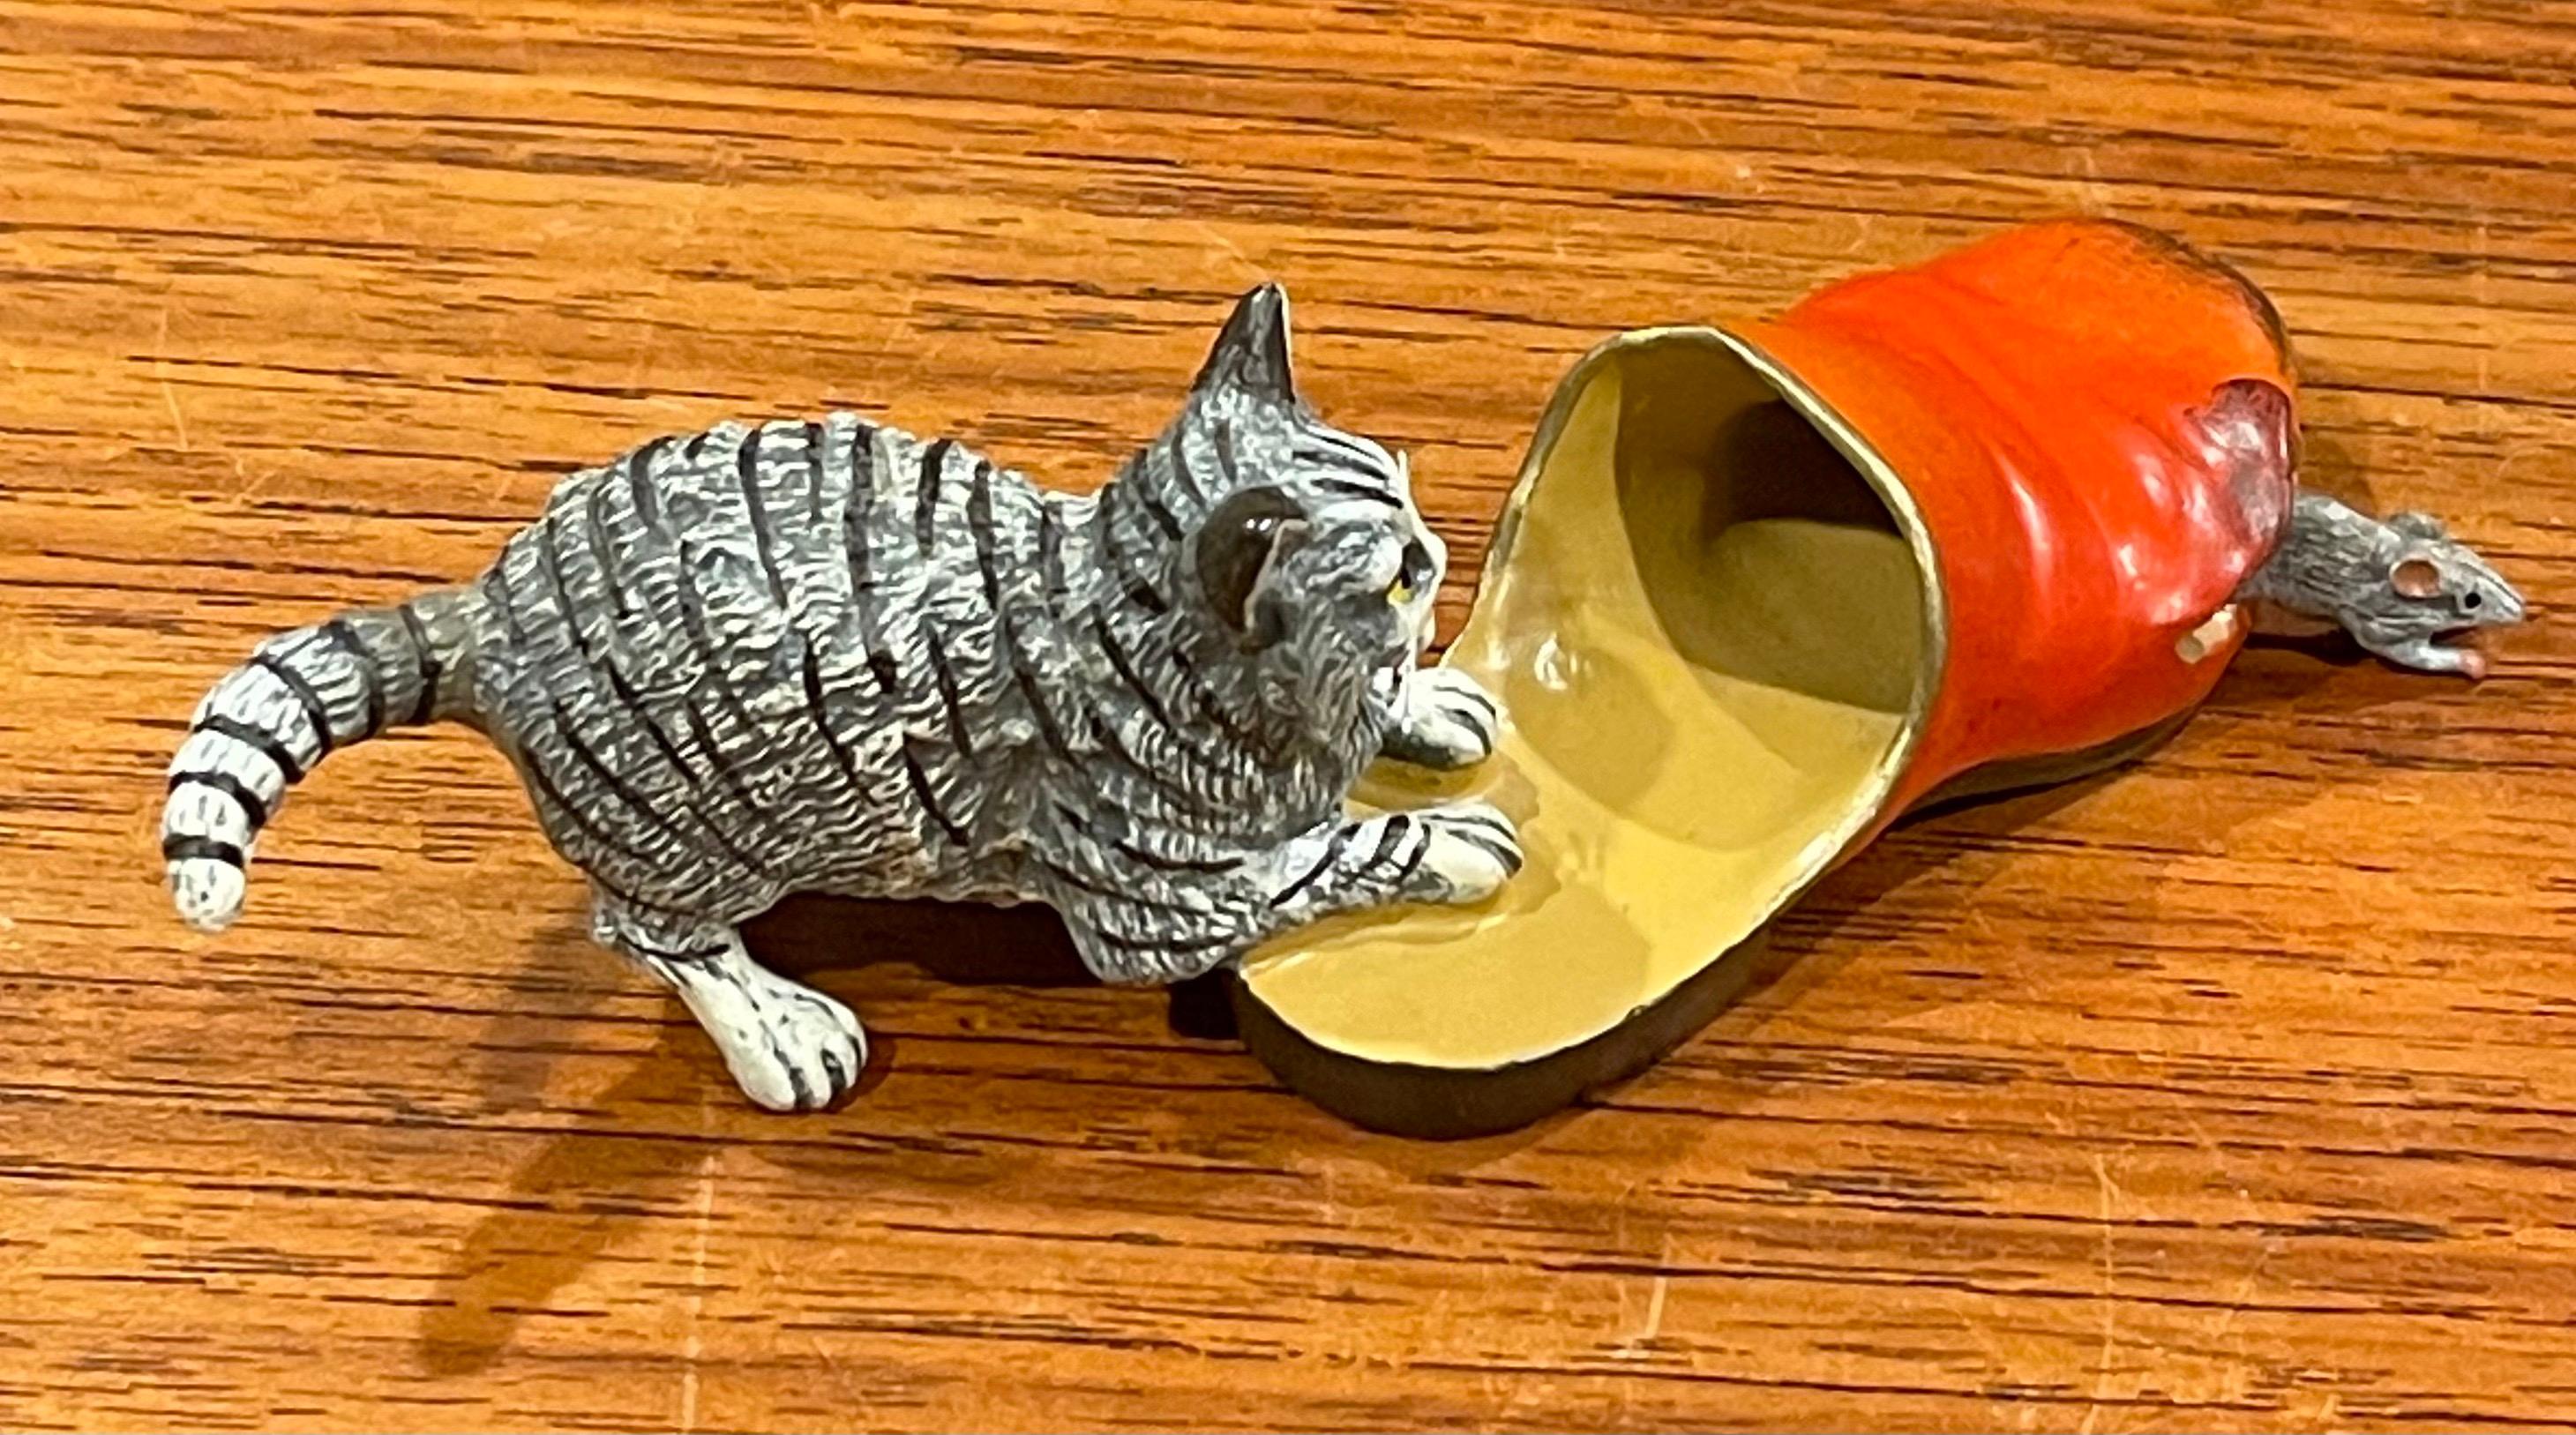 Austrian Bronze Hand Painted Miniature Cat, Mouse & Shoe Sculpture For Sale 1